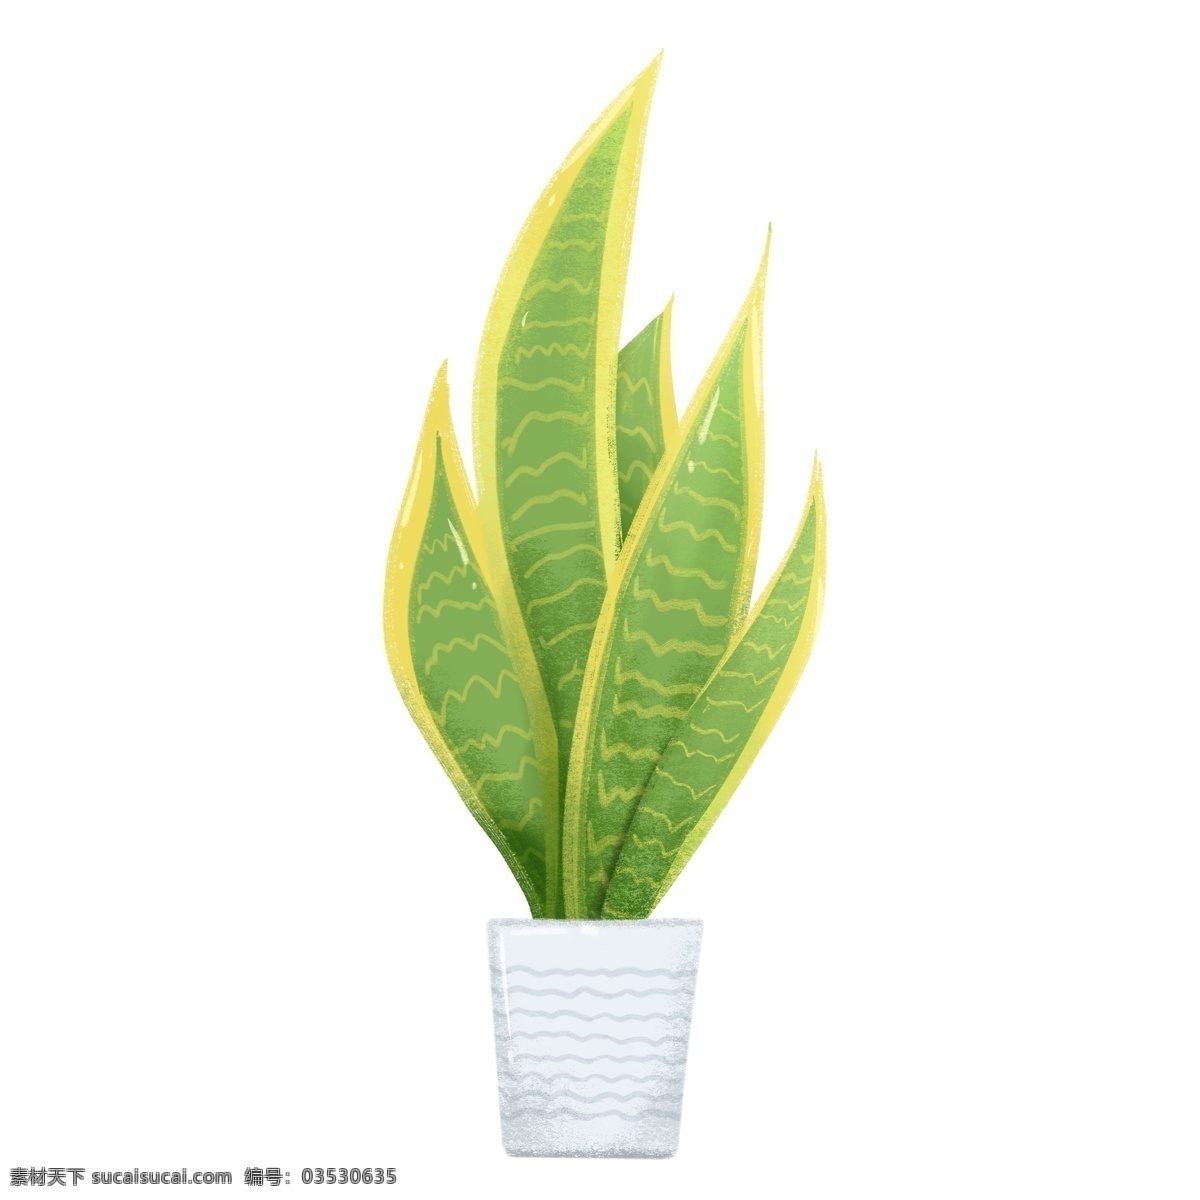 简约 北欧 手绘 植物 室内 盆栽 绿植 卡通 元素 装饰 背景素材 绿色 插画风 免扣 花盆